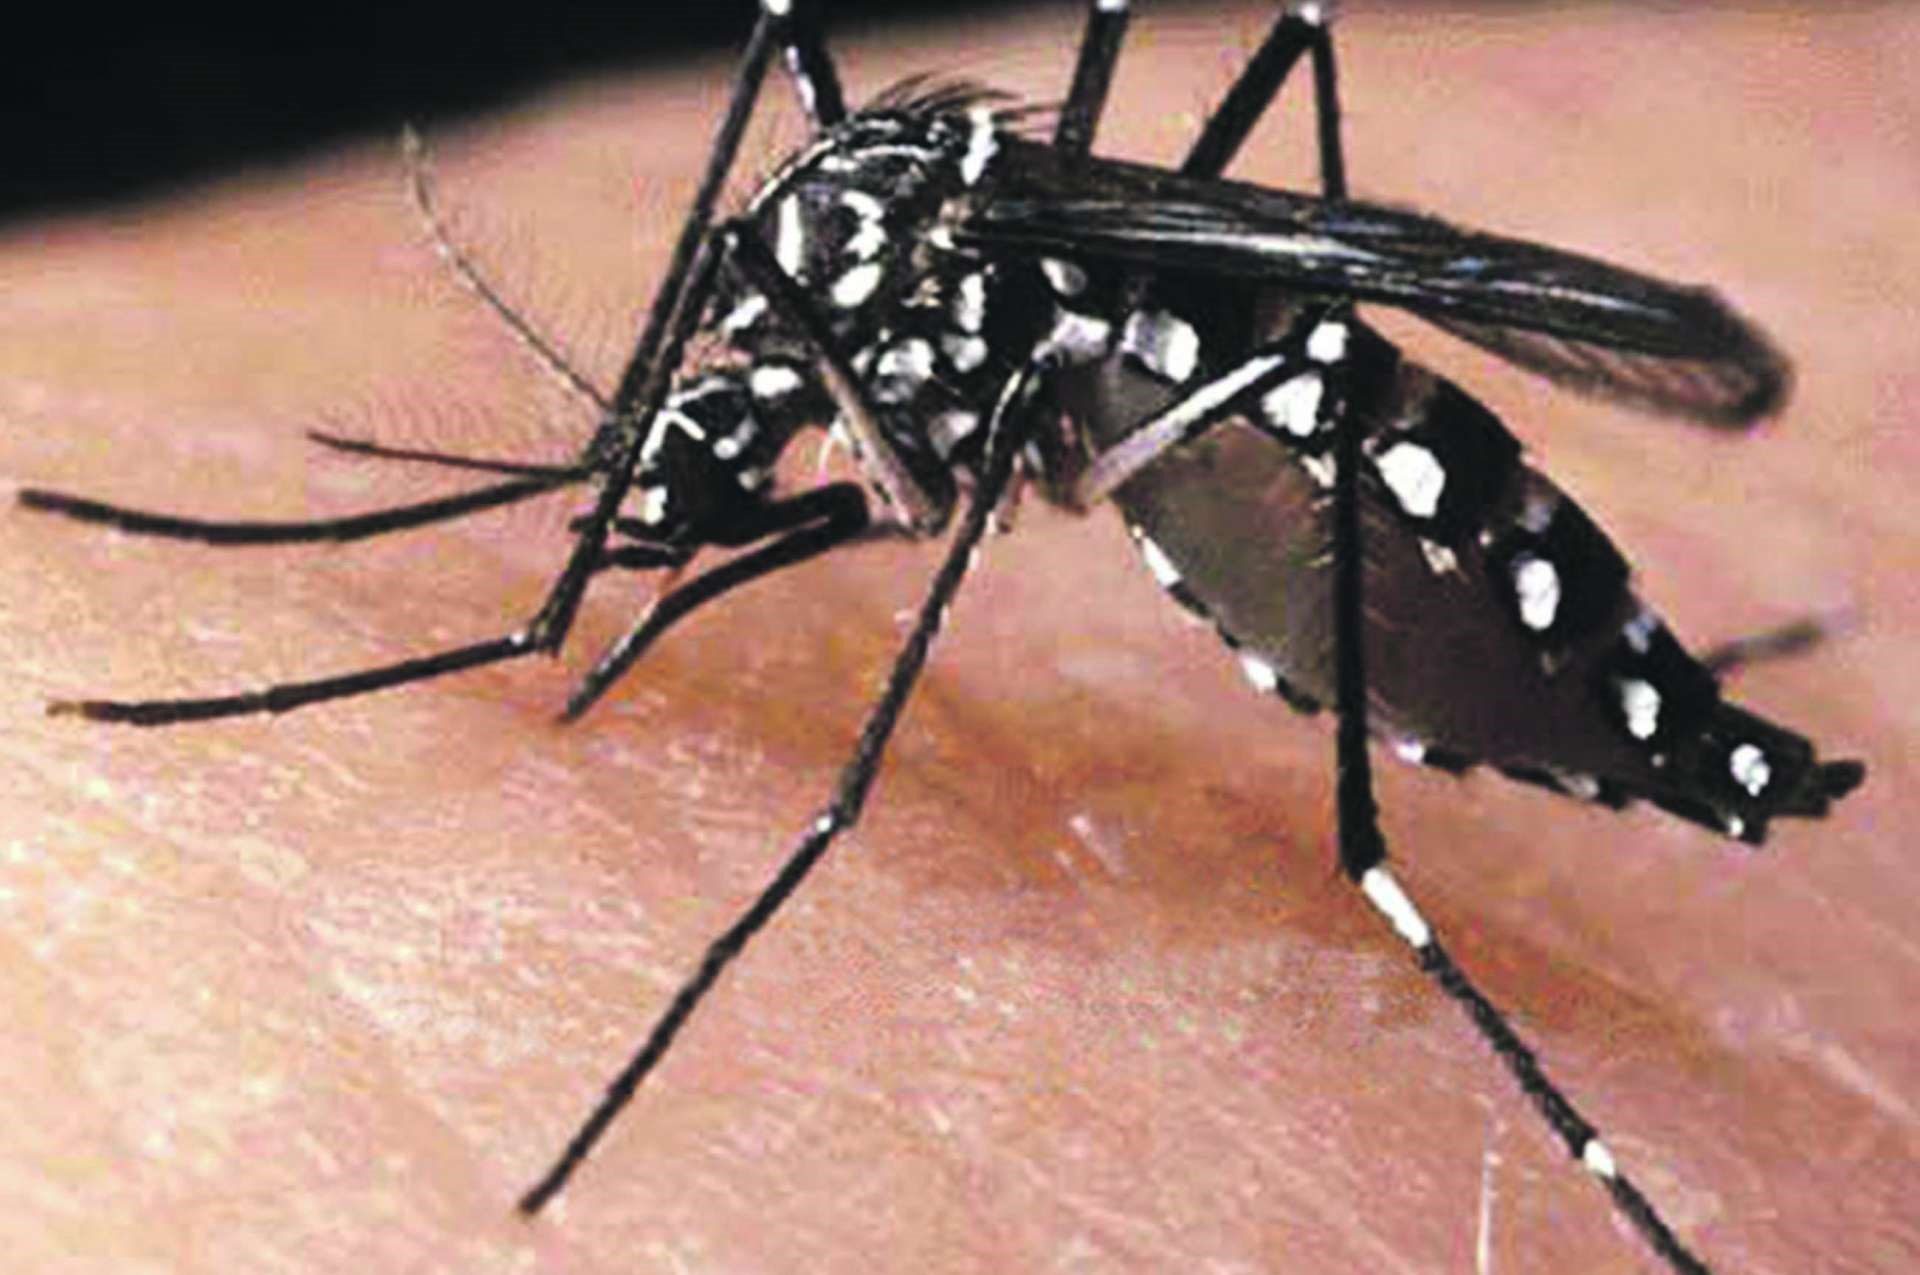 Casos suspeitos de Dengue em Caratinga caem de 1378 para 15 em um ano